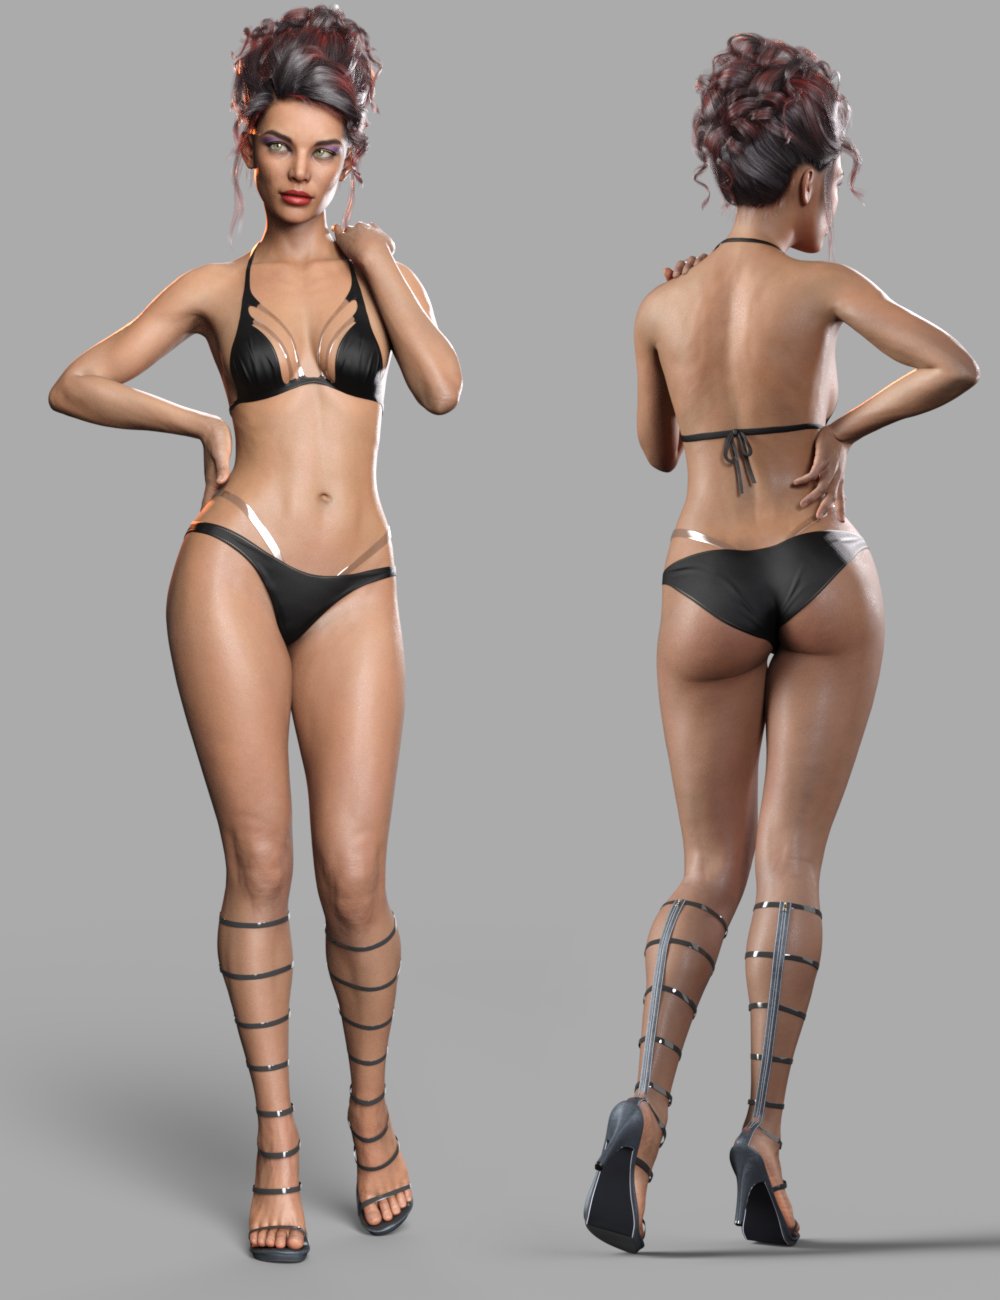 Nefeli HD for Genesis 8.1 Female by: Mousso, 3D Models by Daz 3D